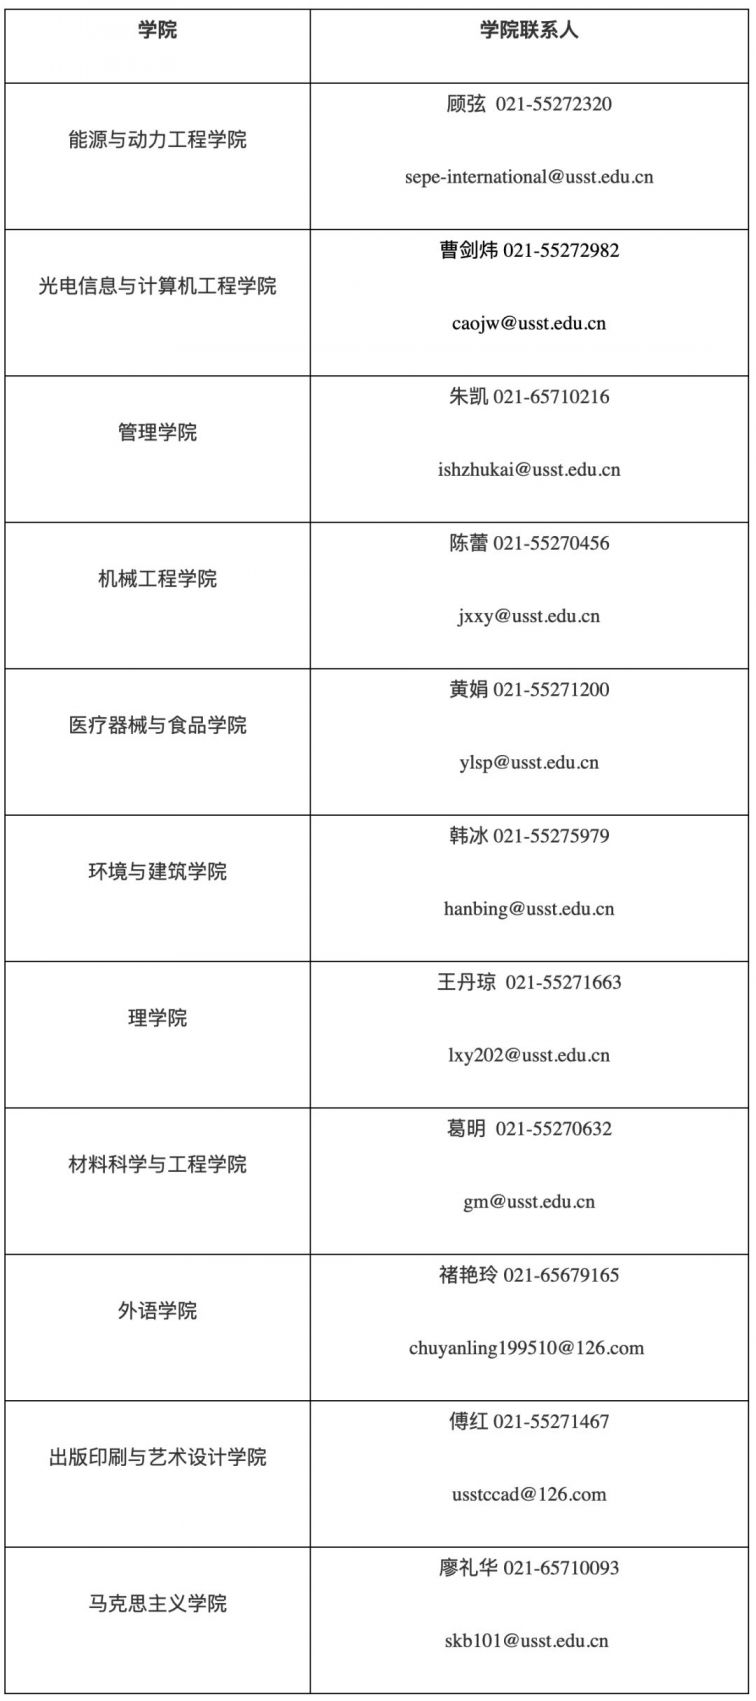 上海理工大学招138名专任教师 3月17日前报名